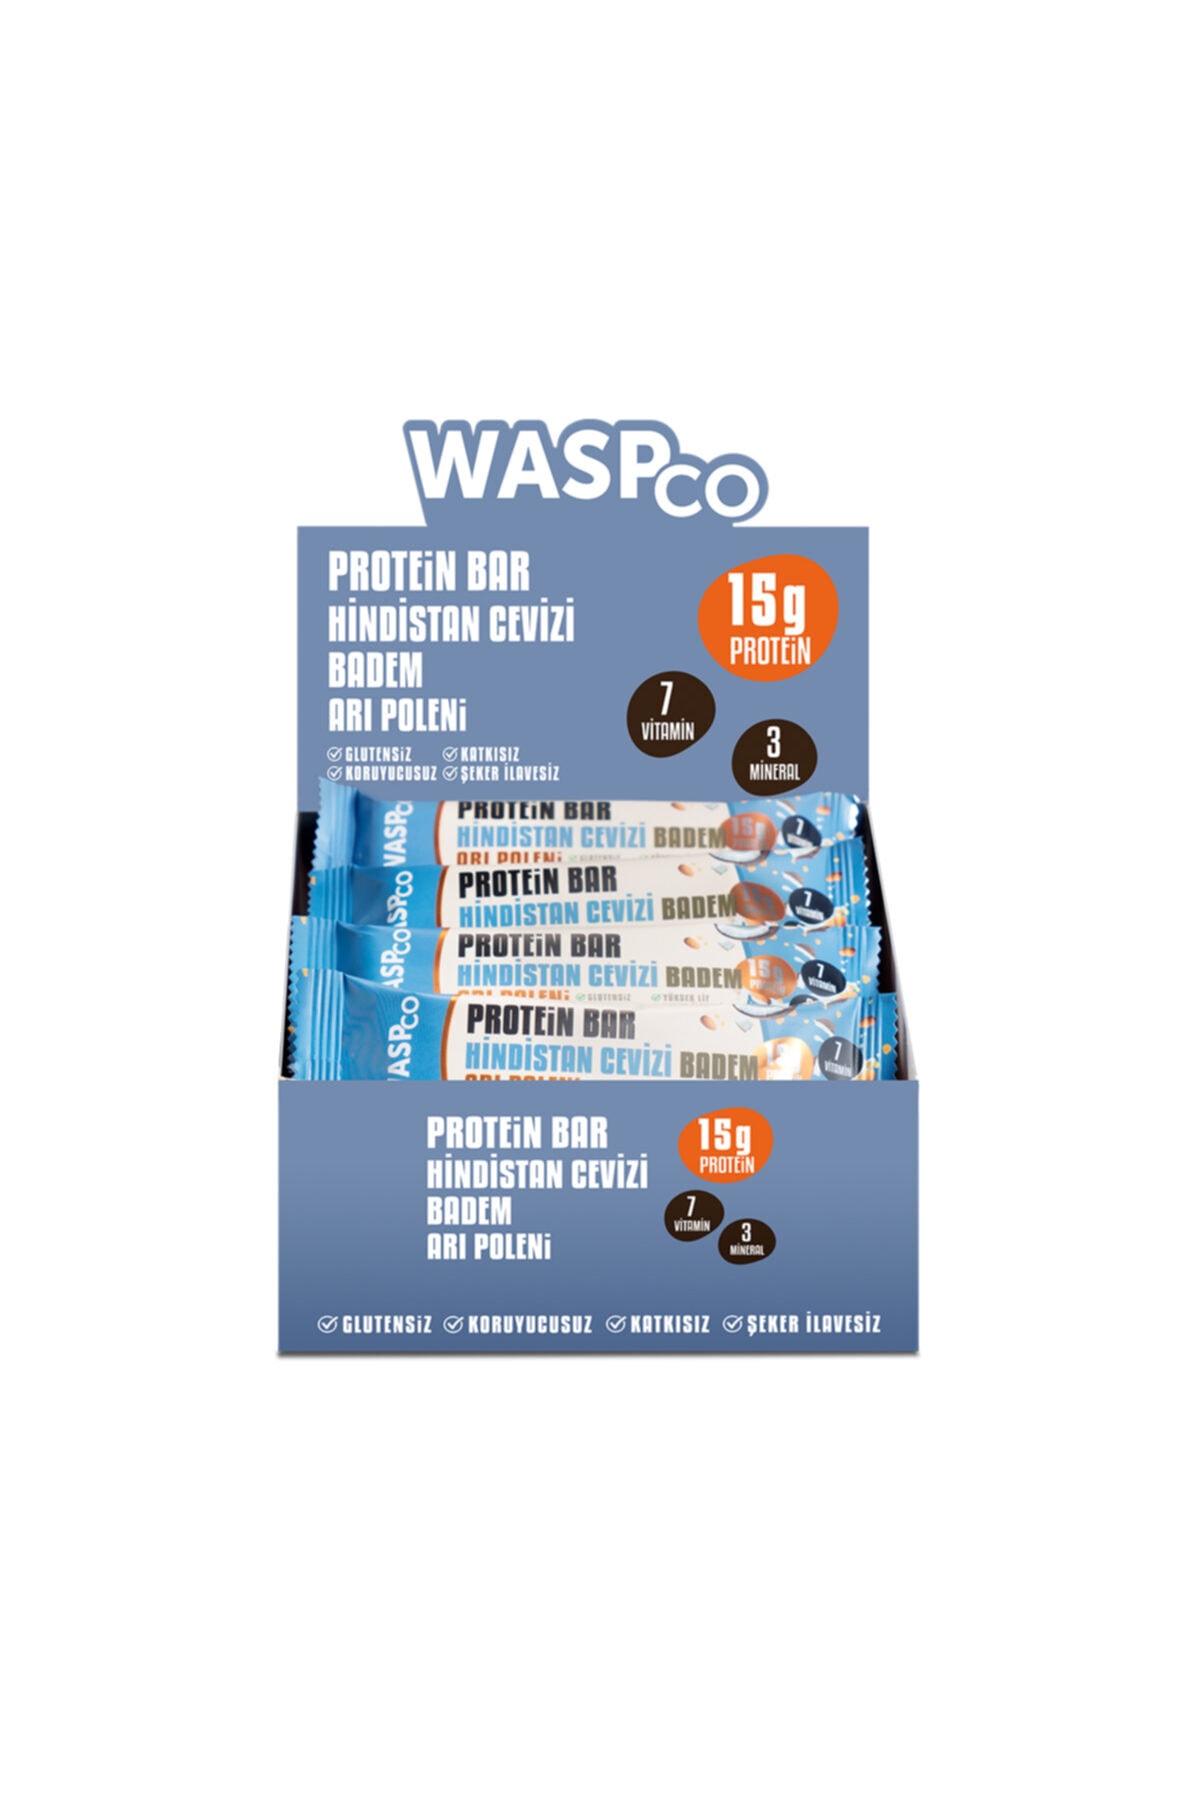 Waspco Hindistan Cevizli Protein Bar X 16 Adet